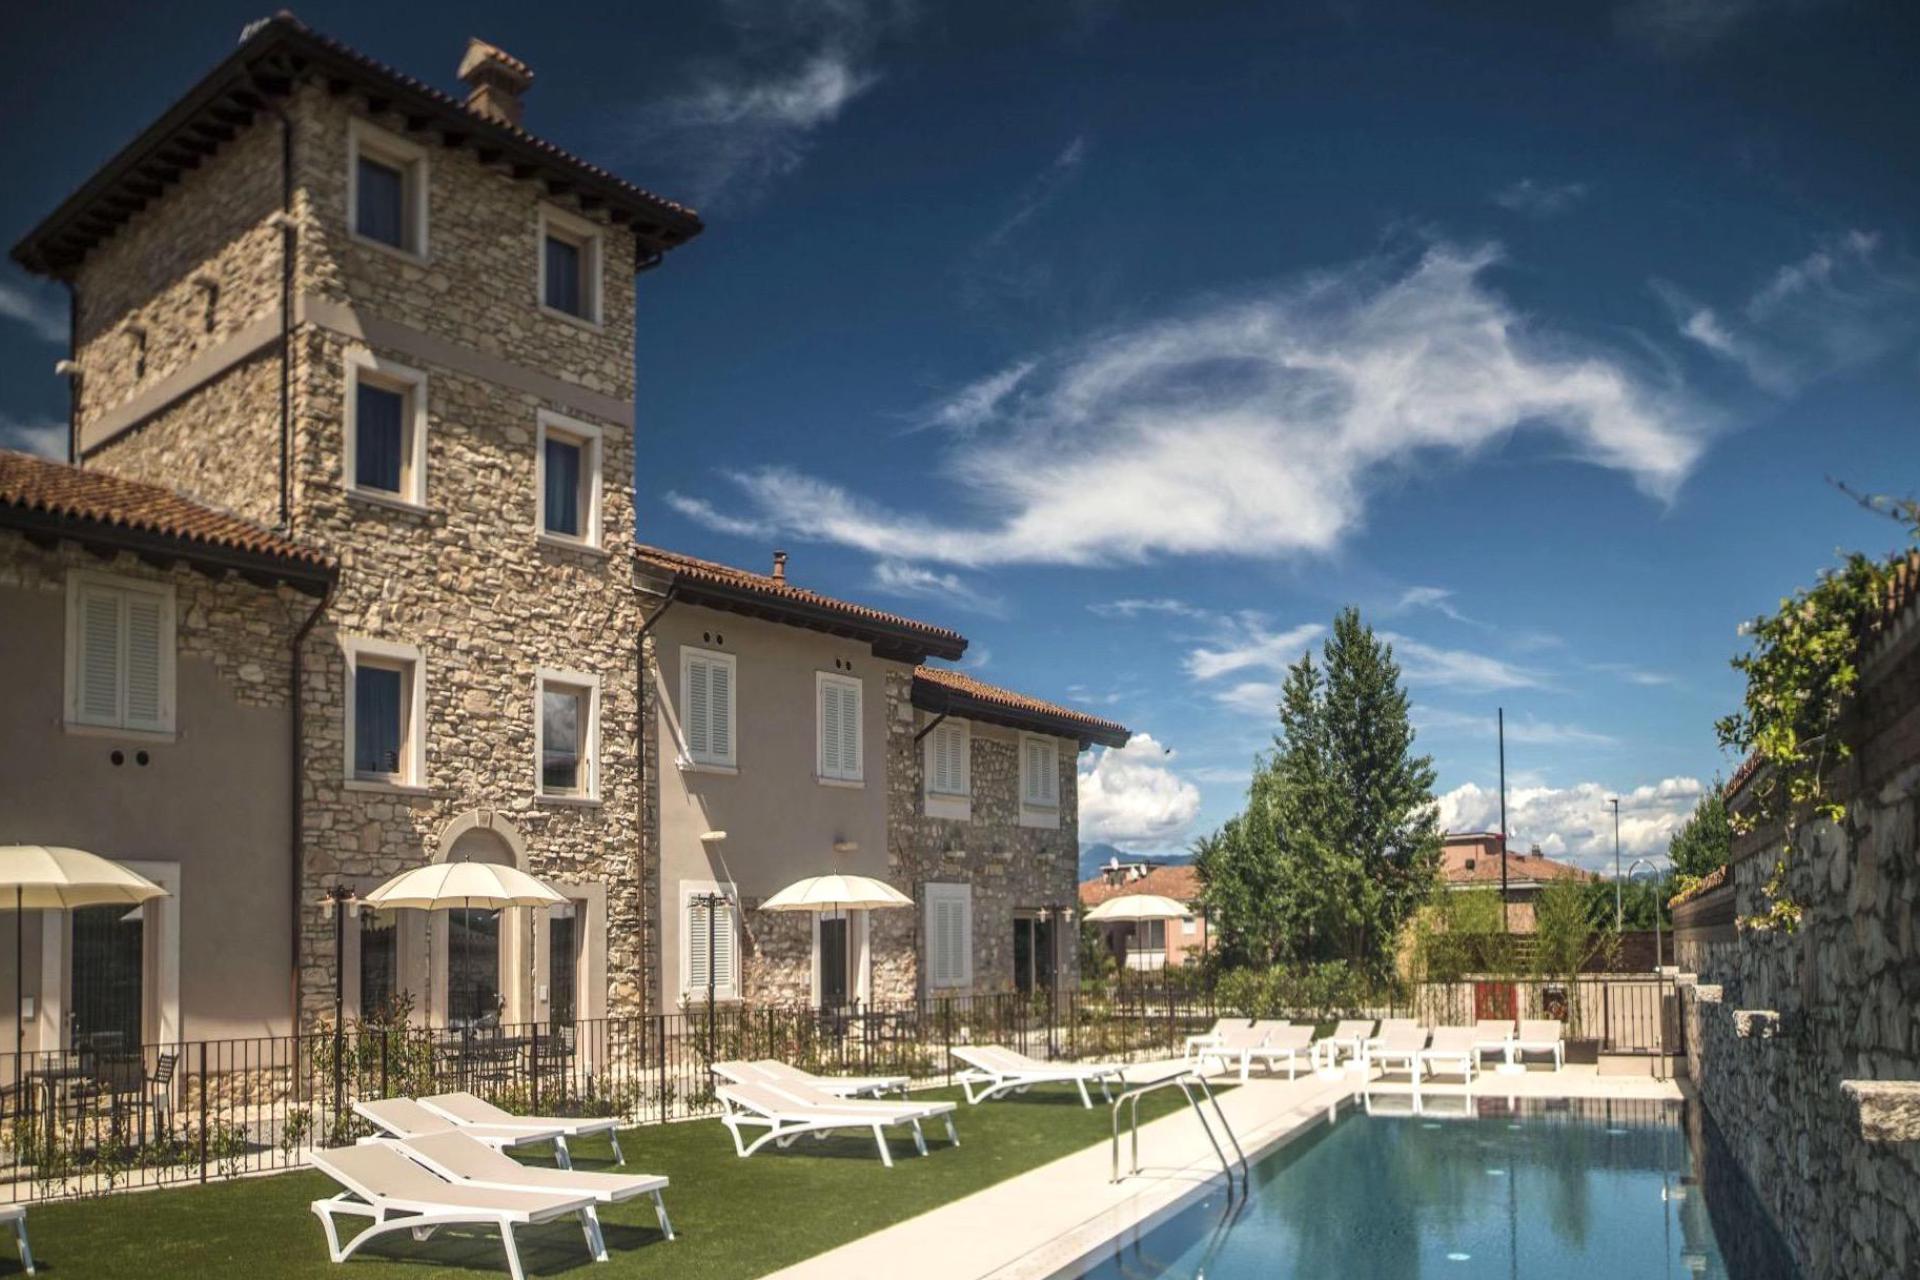 Luxury agriturismo within walking distance of Lake Garda